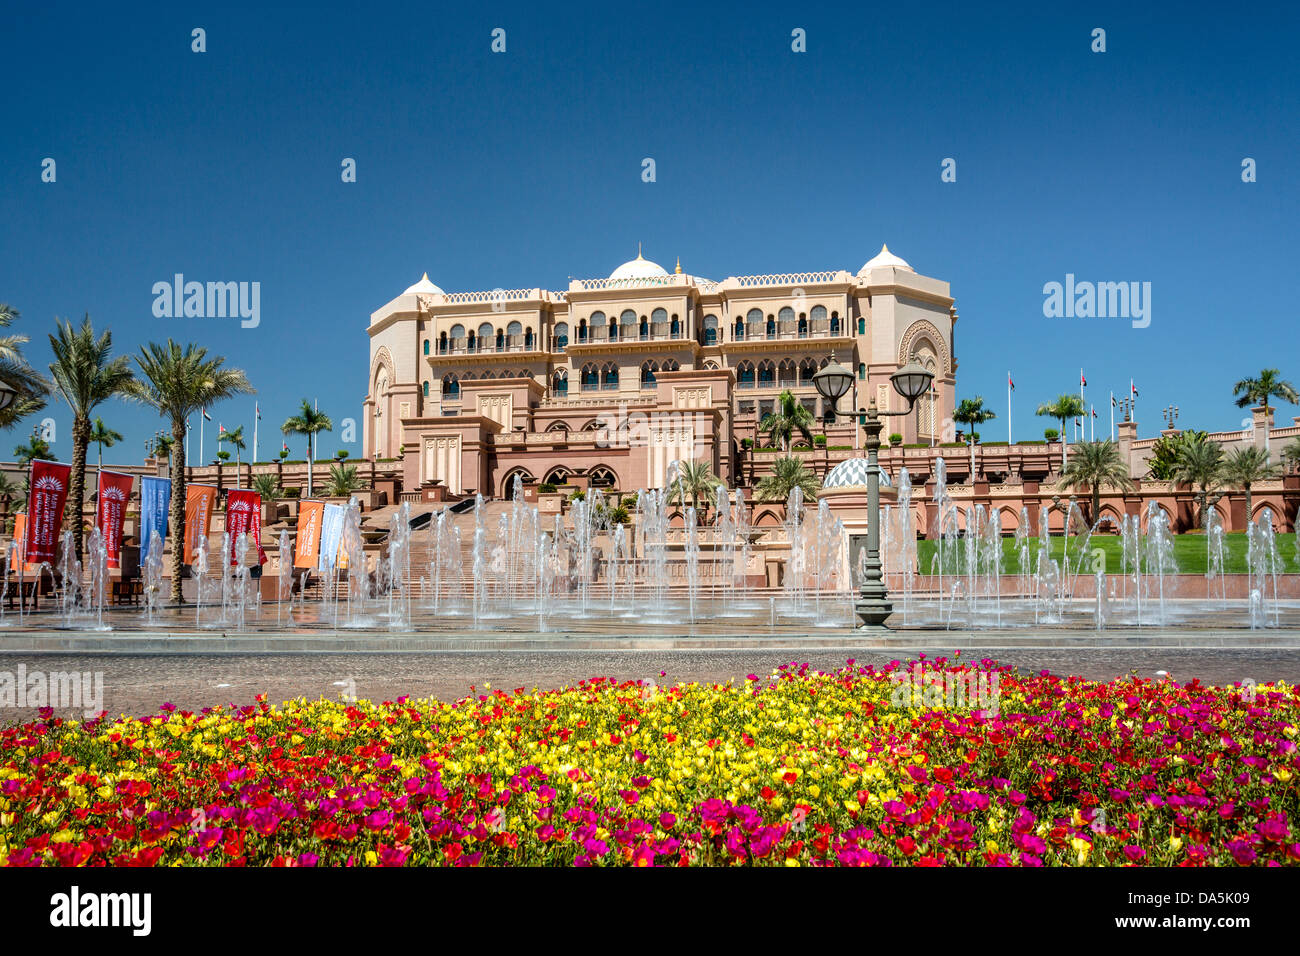 Vereinigte Arabische Emirate, Vereinigte Arabische Emirate, Naher Osten, Abu Dhabi, Stadt, Emirates Palace, Architektur, bunt, Emirate, berühmte, Blumen, fo Stockfoto